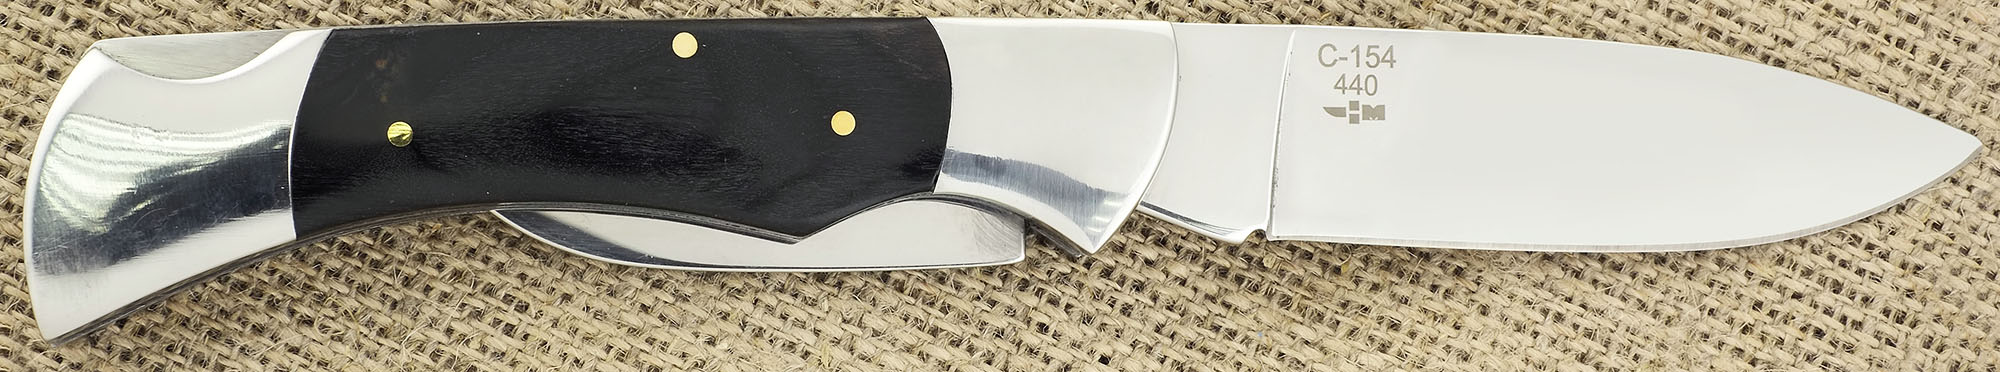 Нож складной с открывашкой и штопором Ножемир Четкий расклад Lion Heart C-154